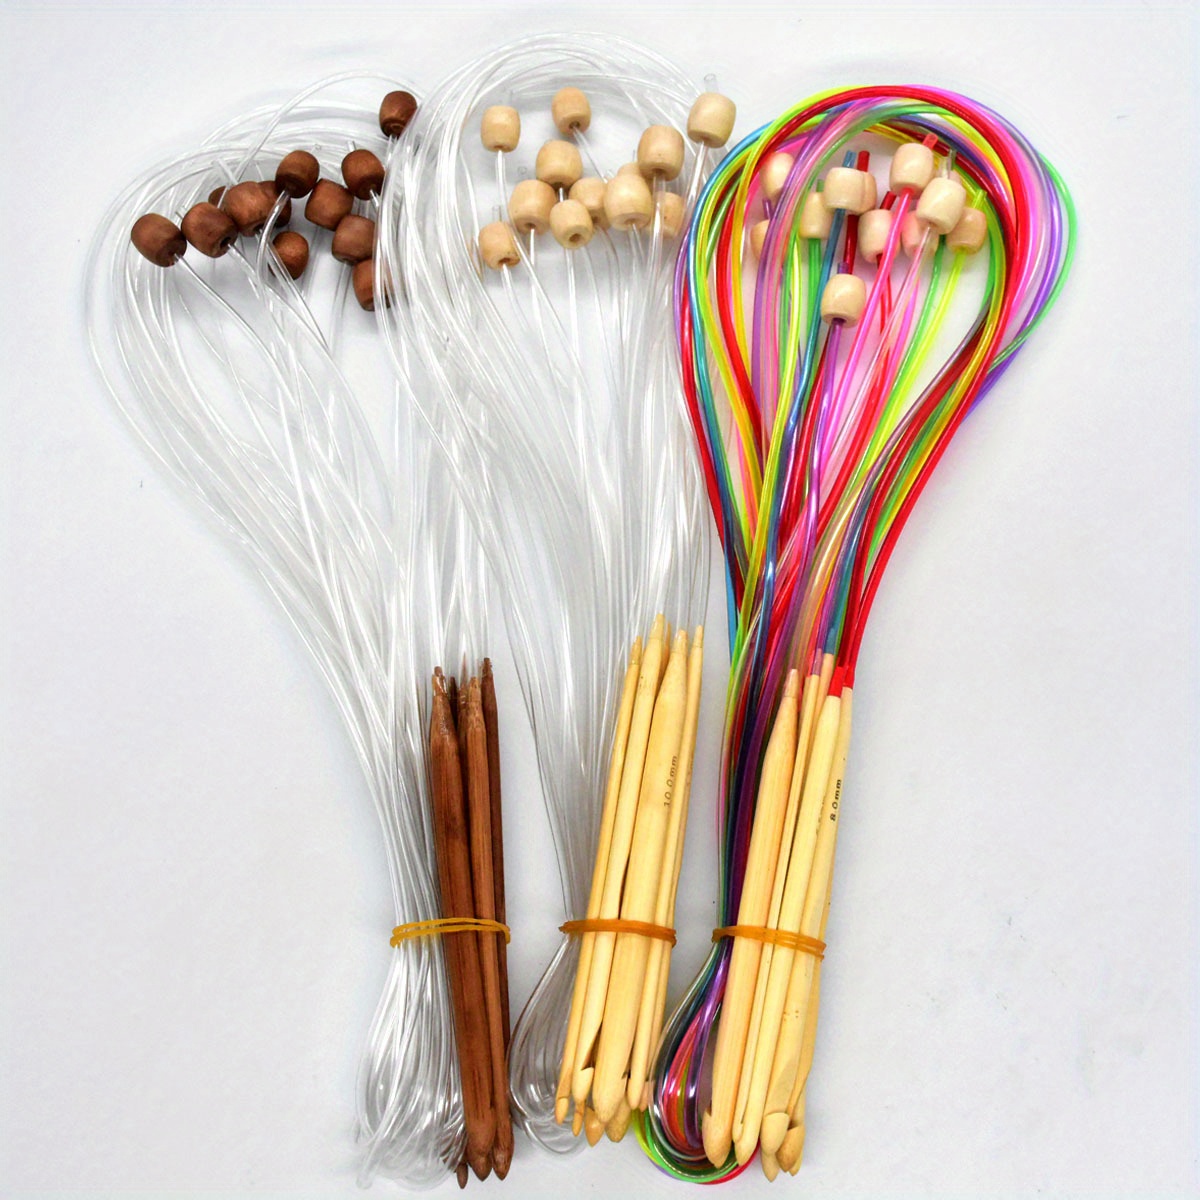  36PCS Bamboo Knitting Needles Set, BetyBedy Single